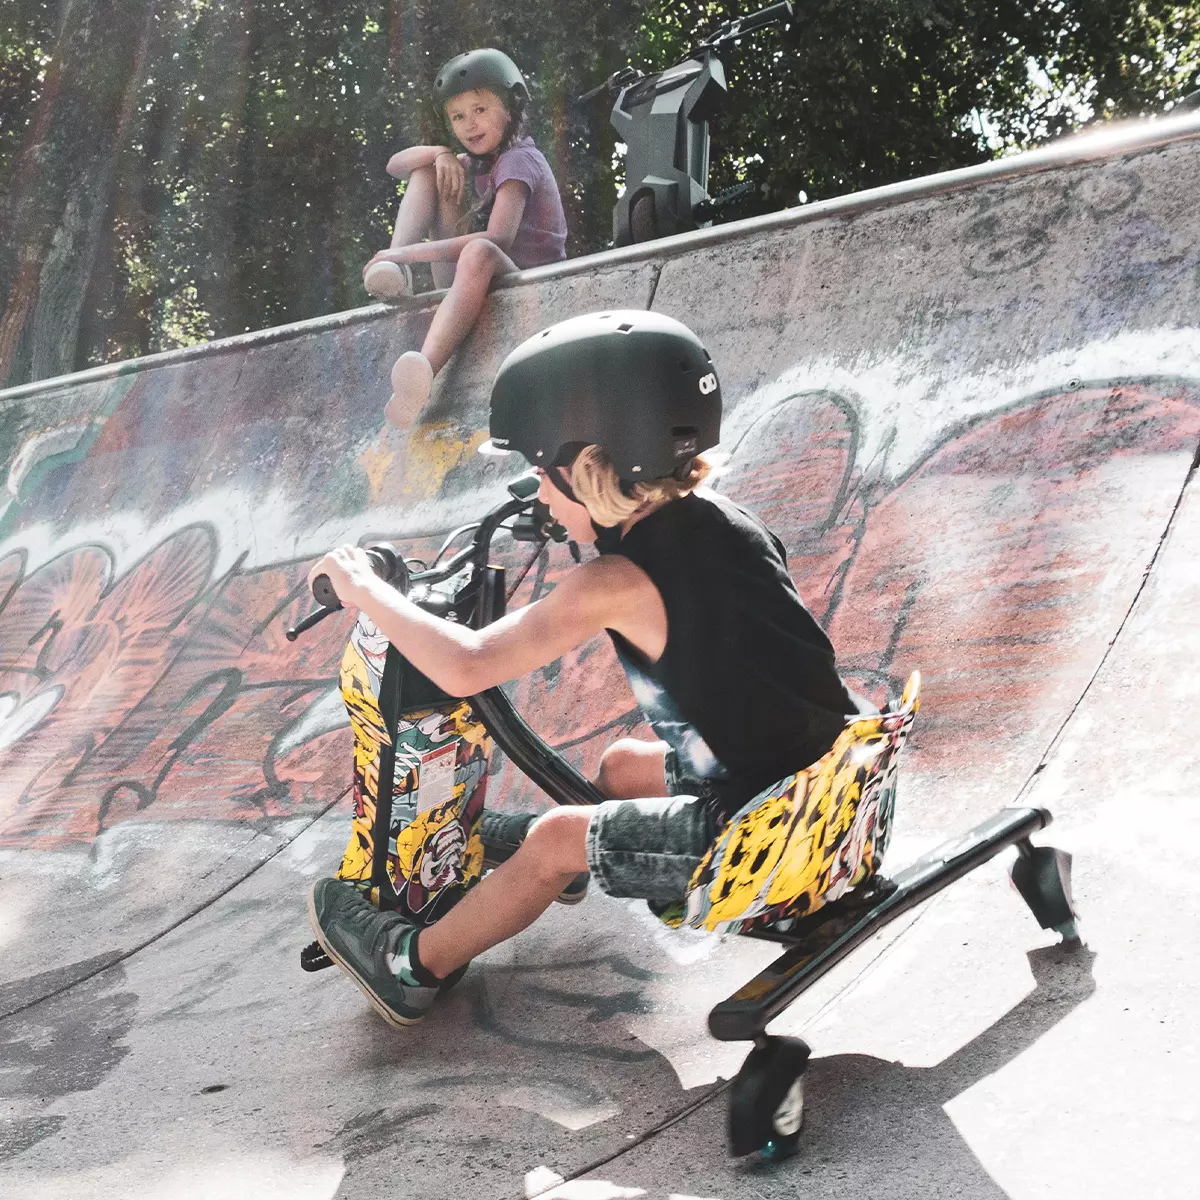 Junge steuert das Elektro-Drift-Trike 360 über die schräge Wand einer Skaterpiste